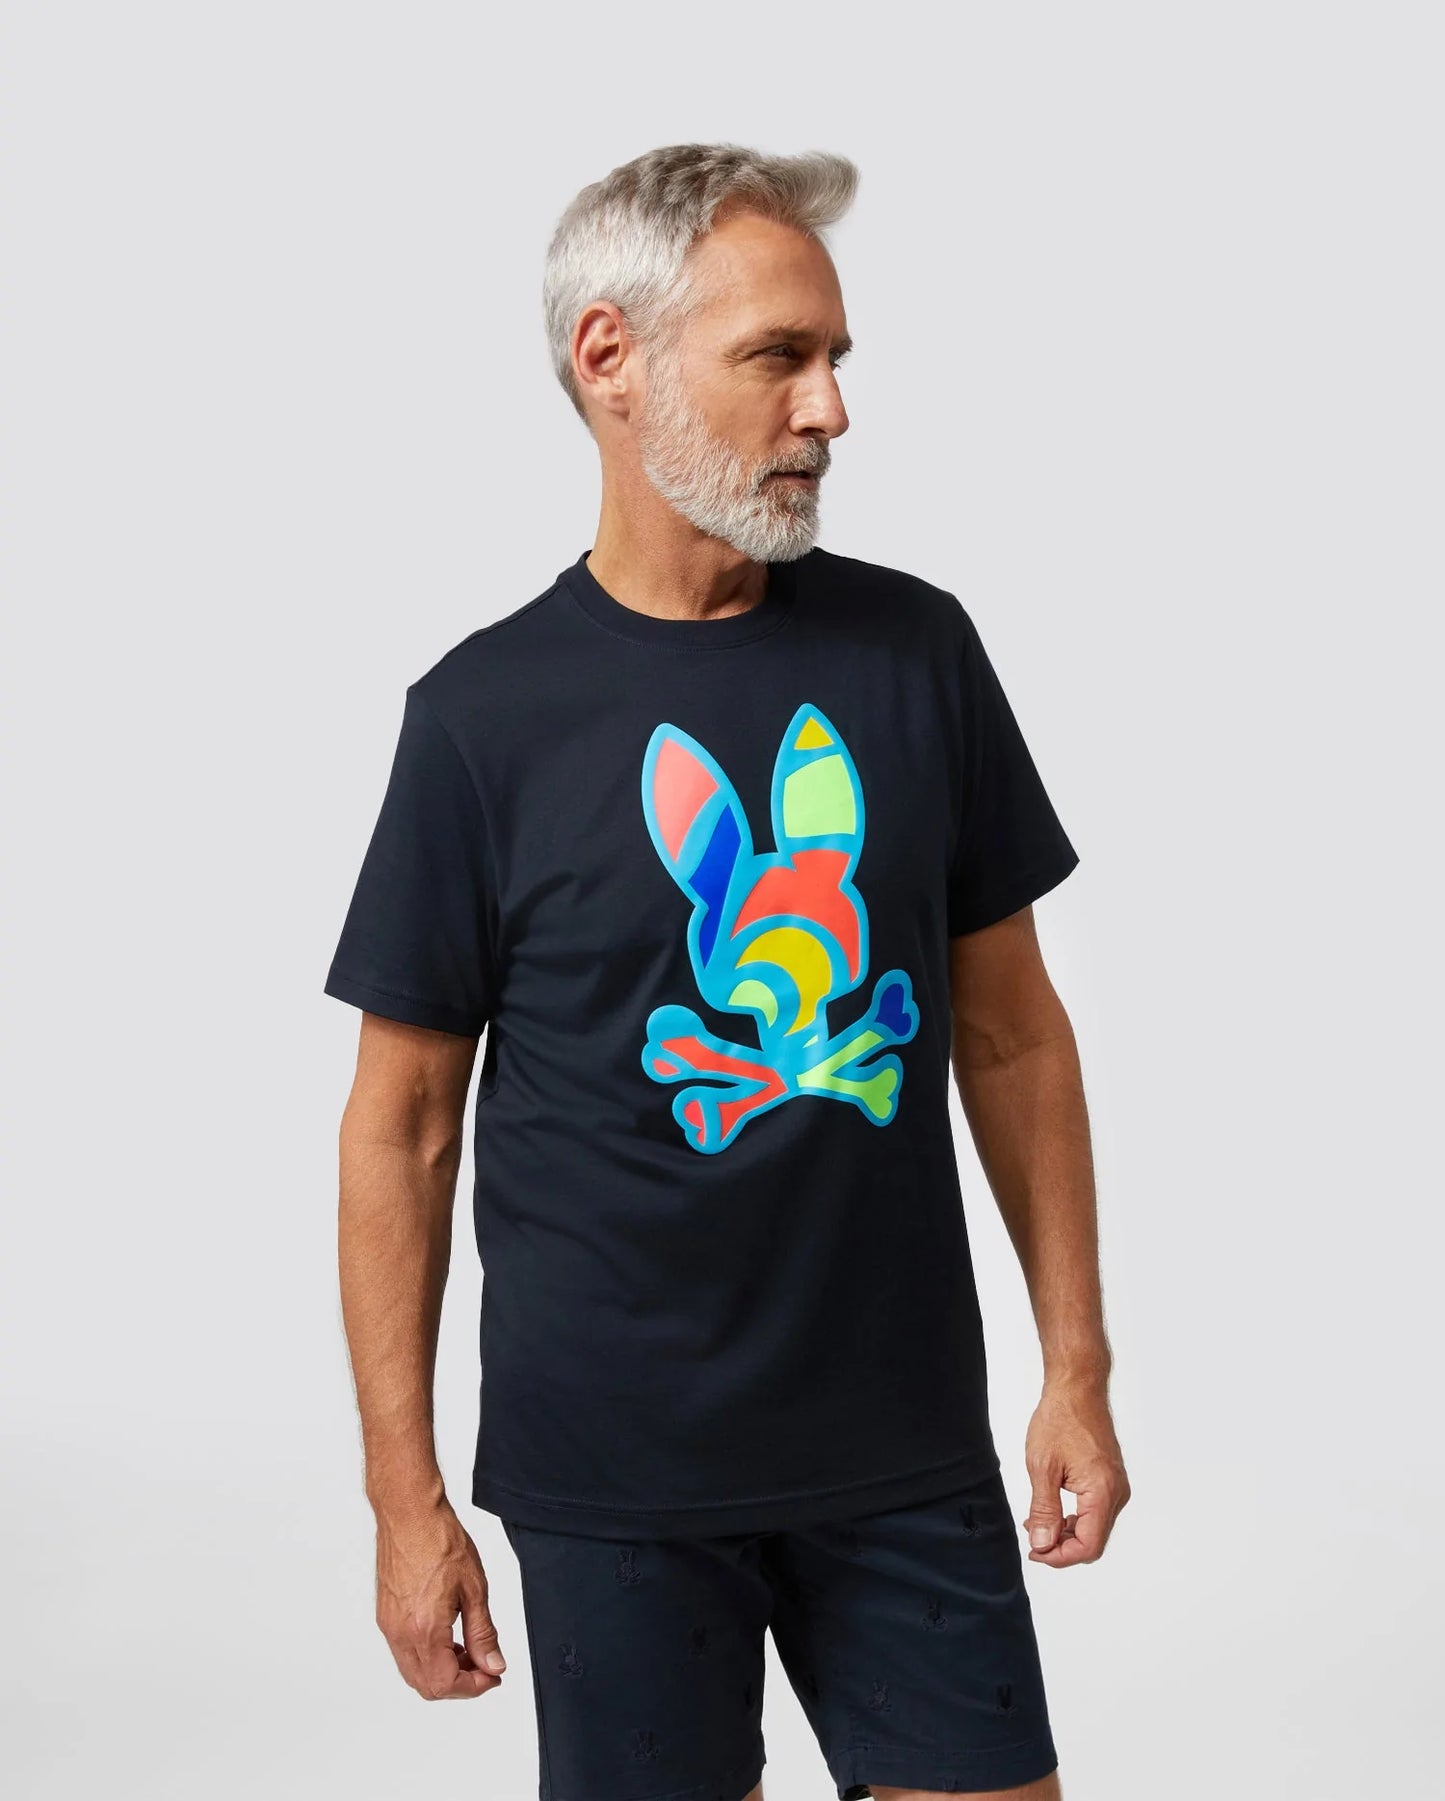 Camiseta de conejito multicolor de Hilsboro para hombre